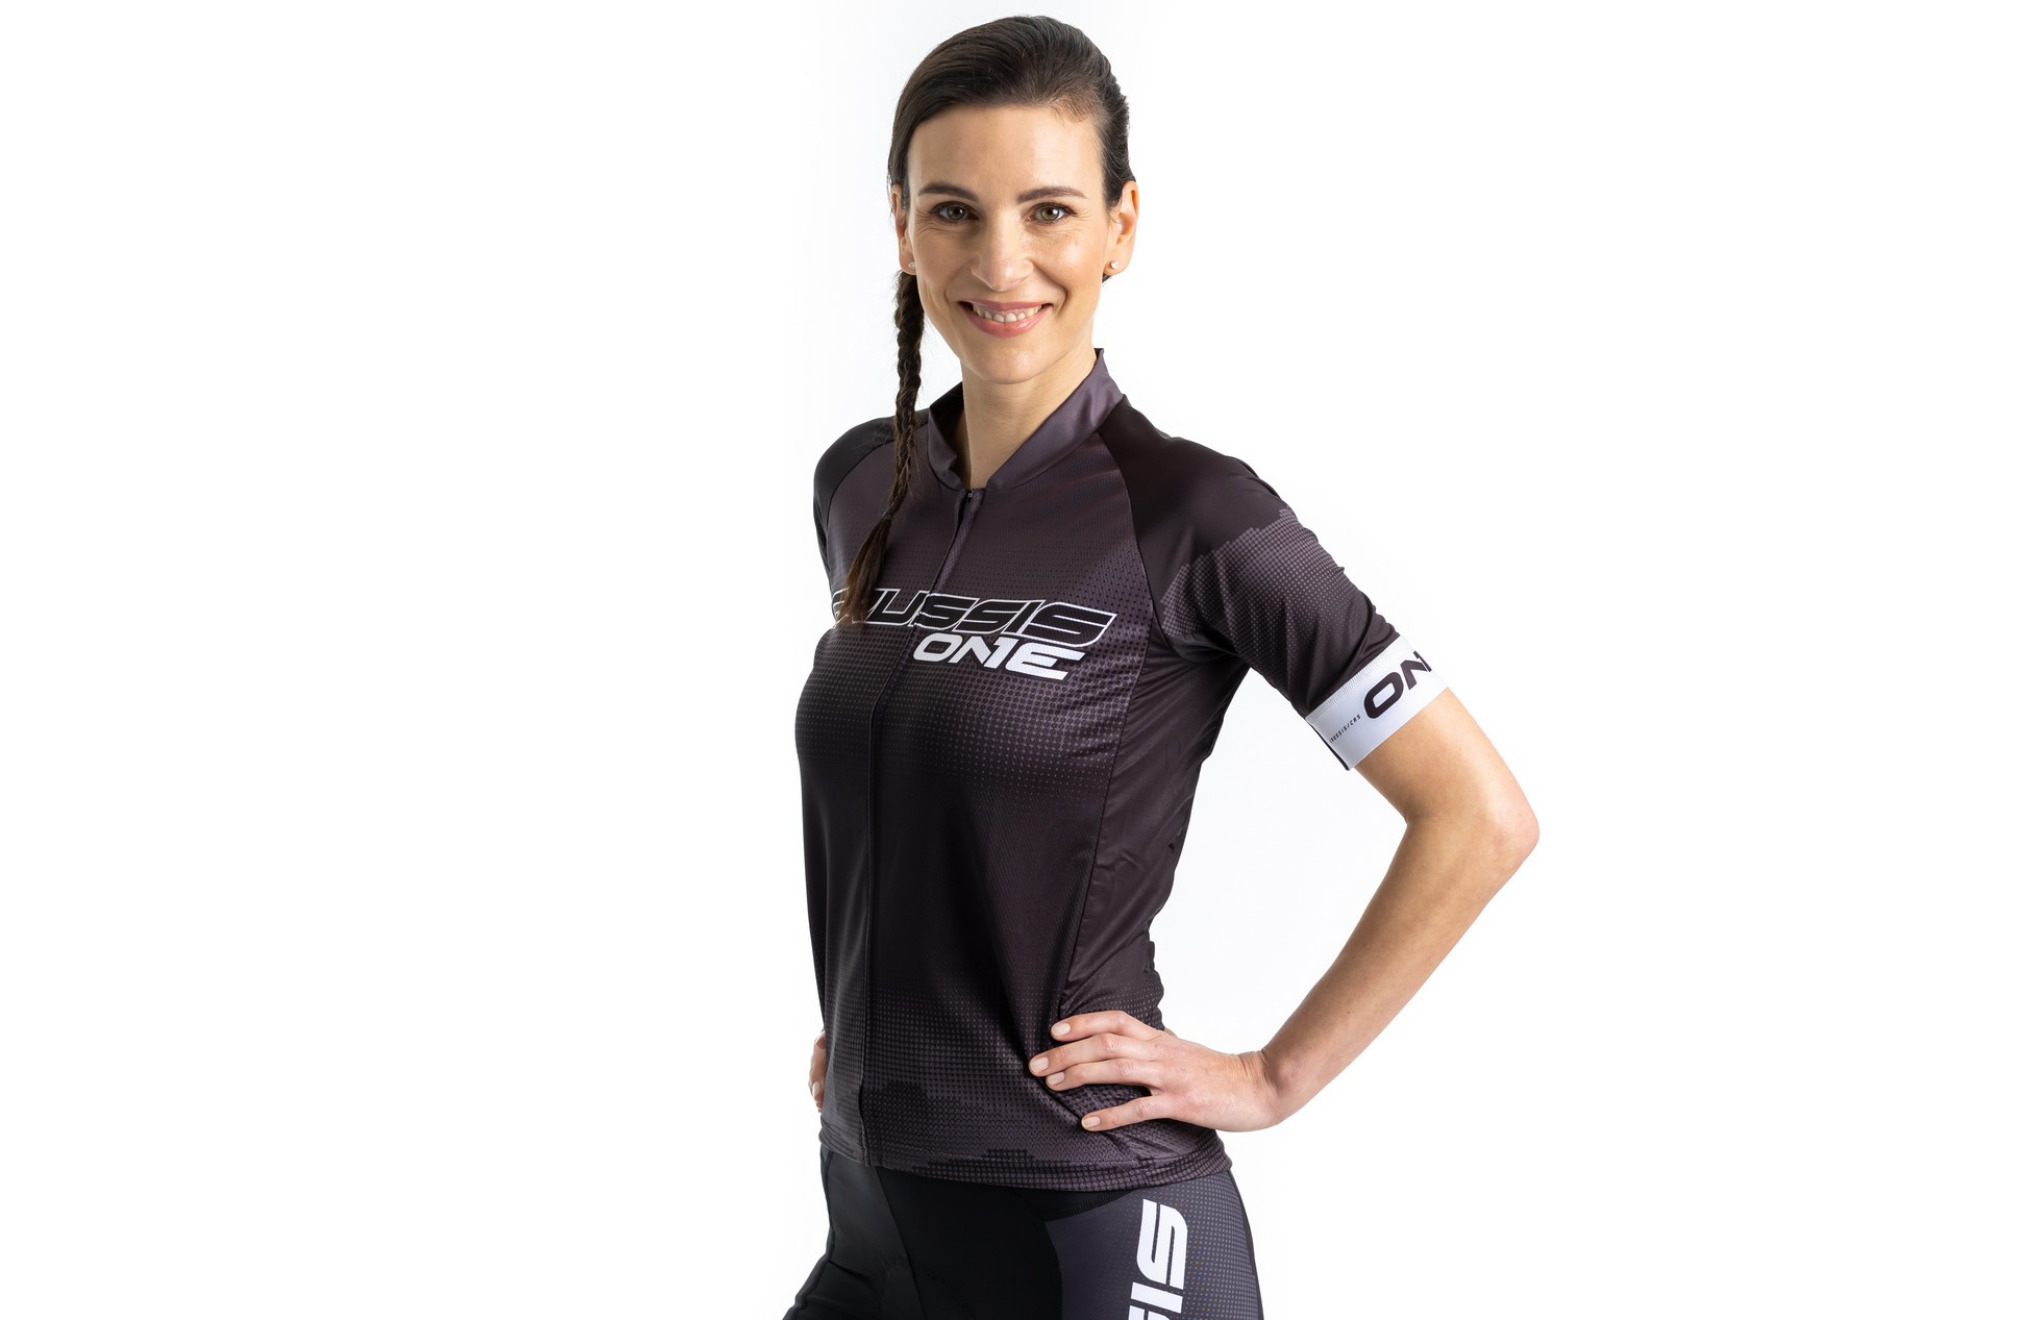 Dámský cyklistický dres CRUSSIS - ONE, krátký rukáv, černá/bílá